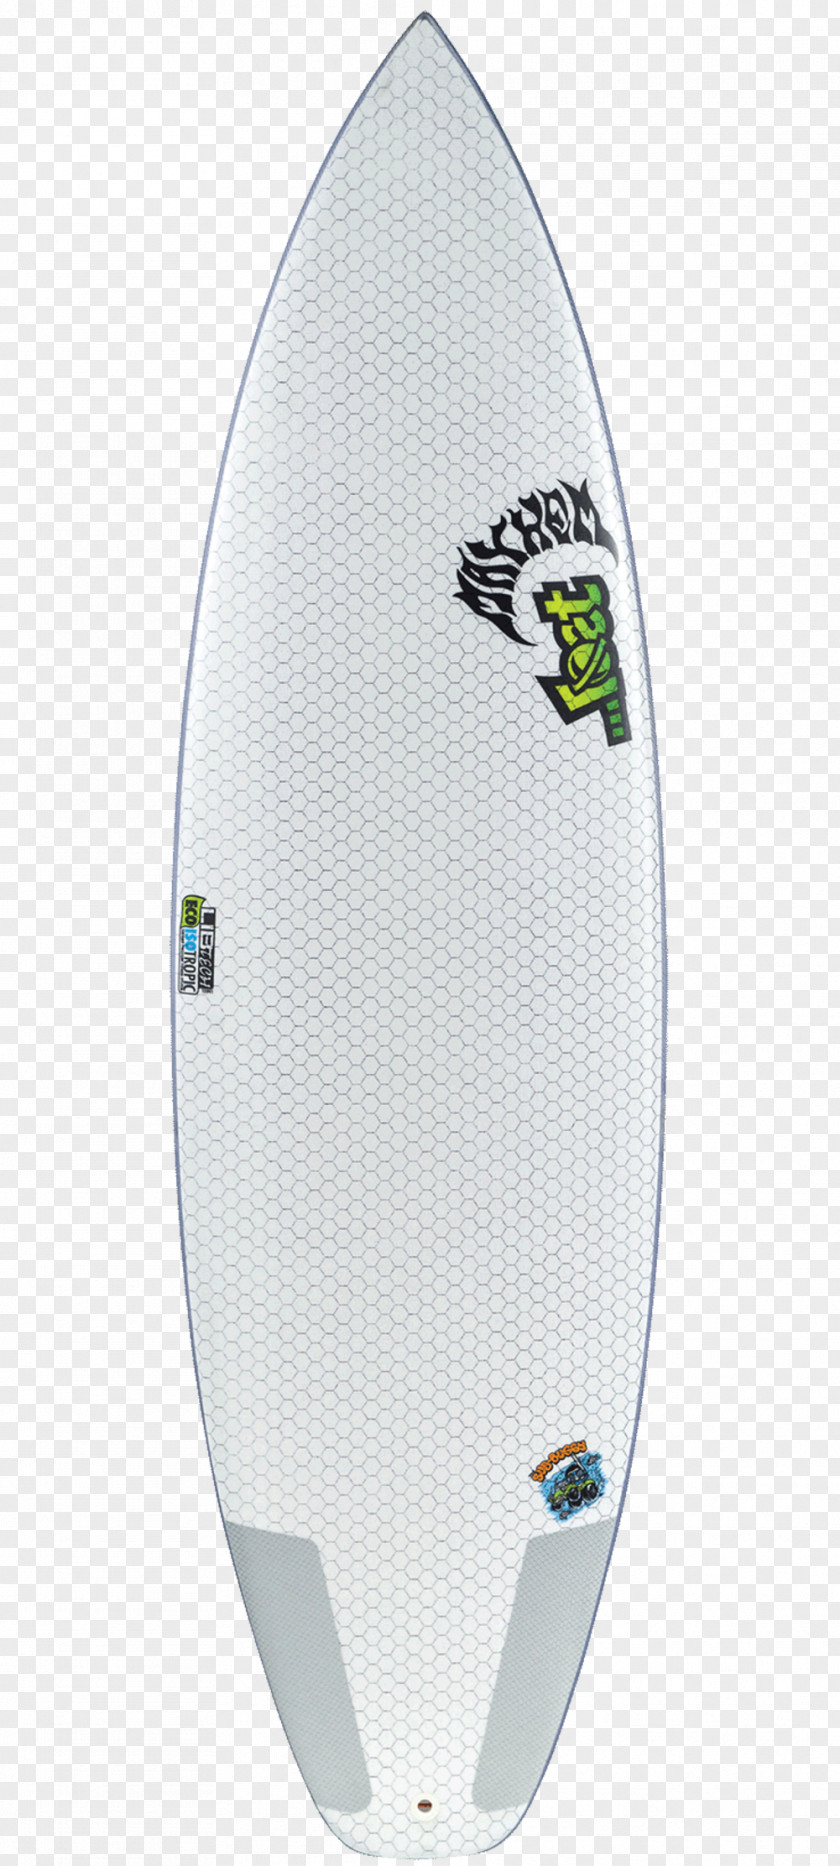 Surf Board Surfboard Surfing Lib Technologies Shortboard Art PNG